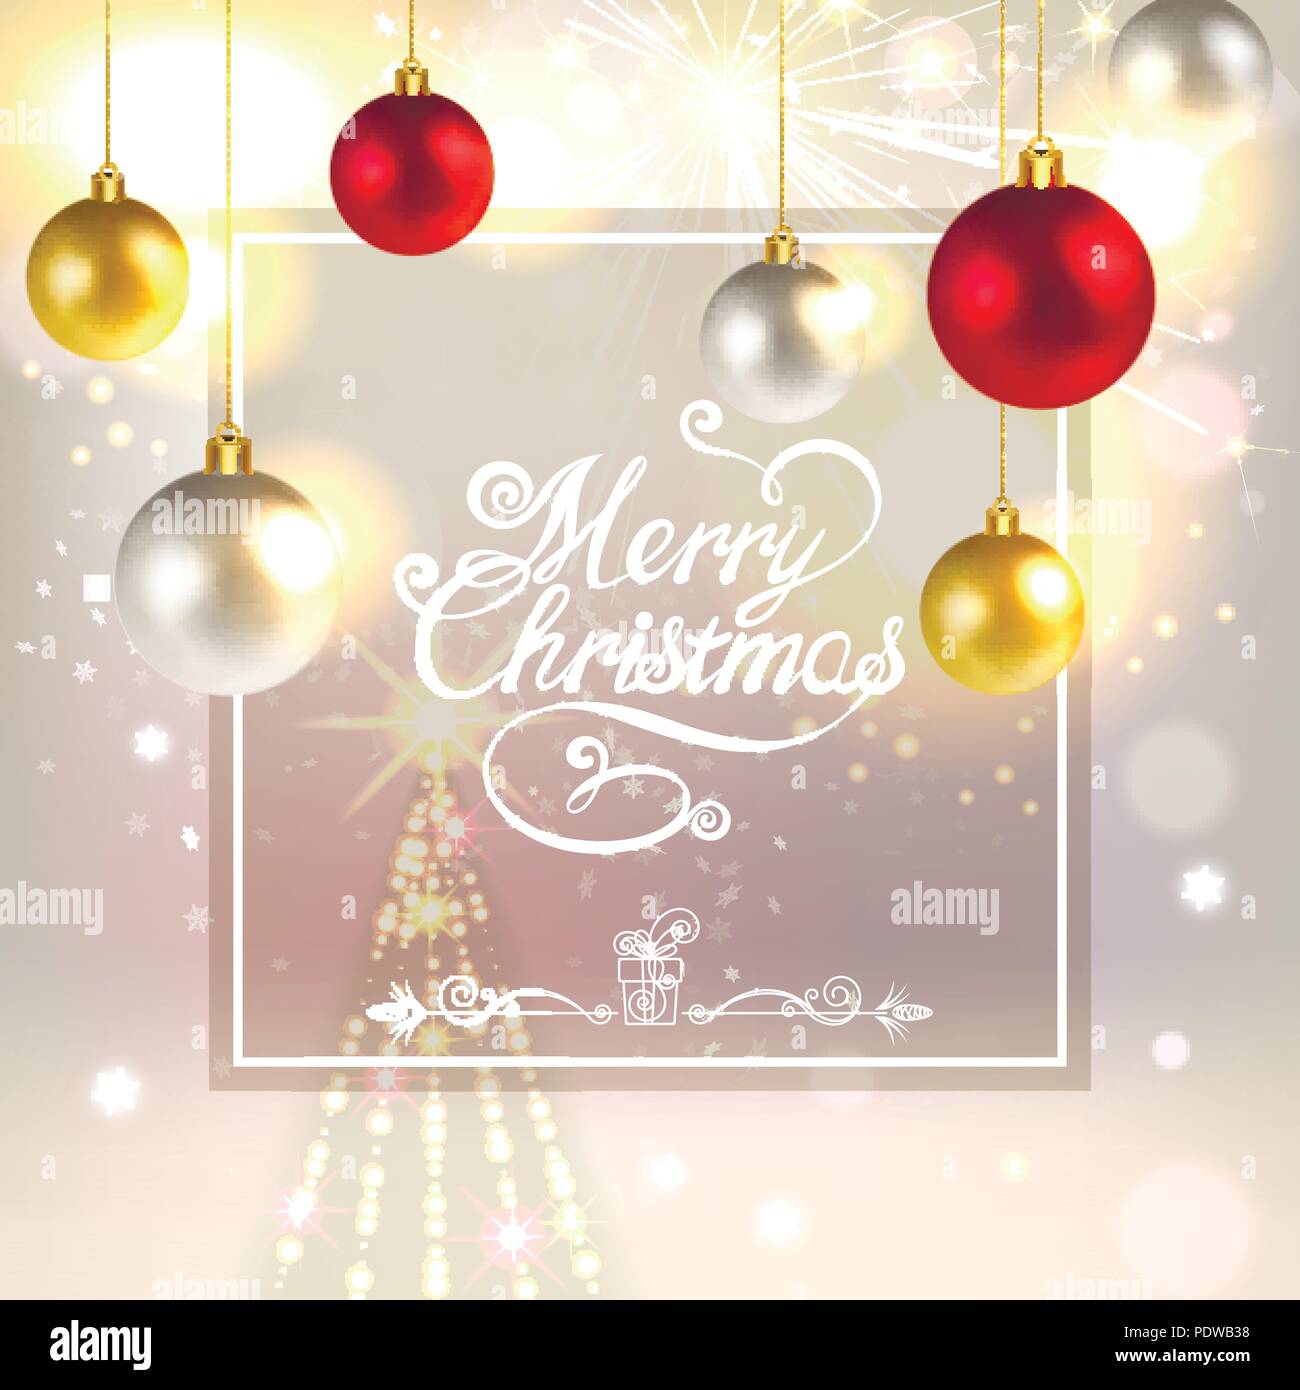 Natale biglietto di auguri con decorazioni natalizie, fuochi d'artificio e abete rosso Illustrazione Vettoriale